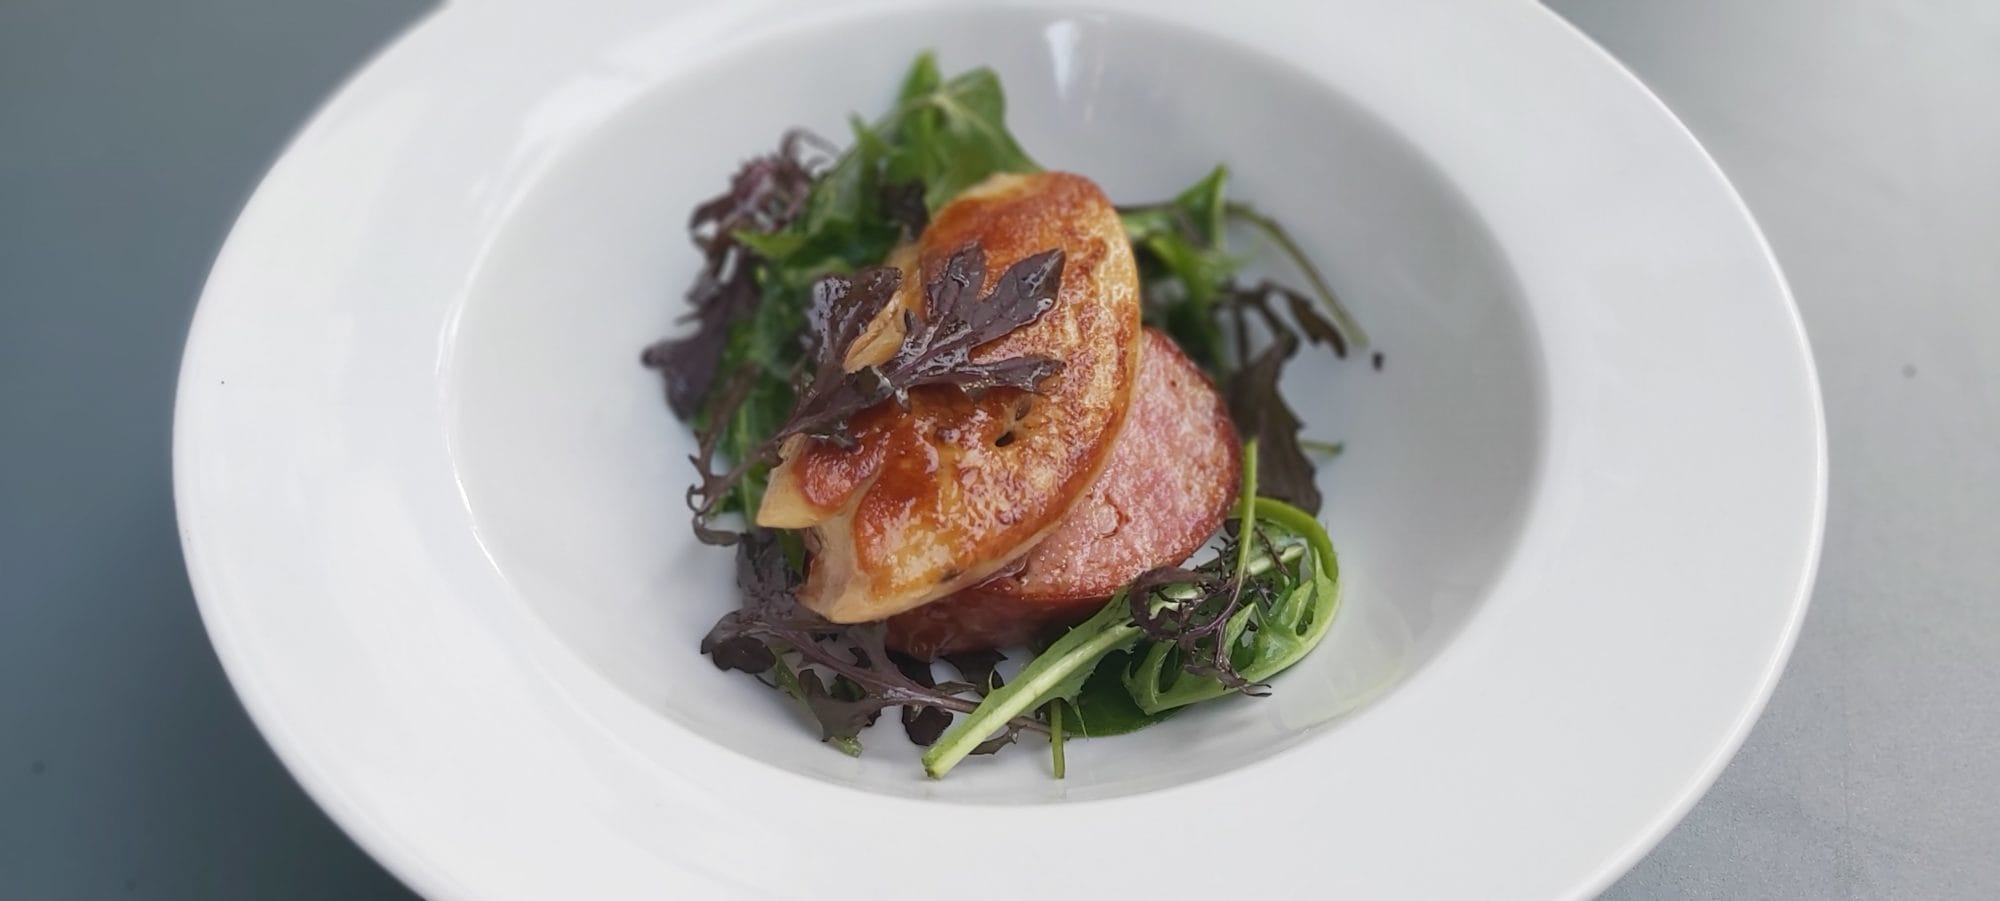 saucisse-de-morteau-et-foie-gras de-canard-rôti-herbes-fraiches